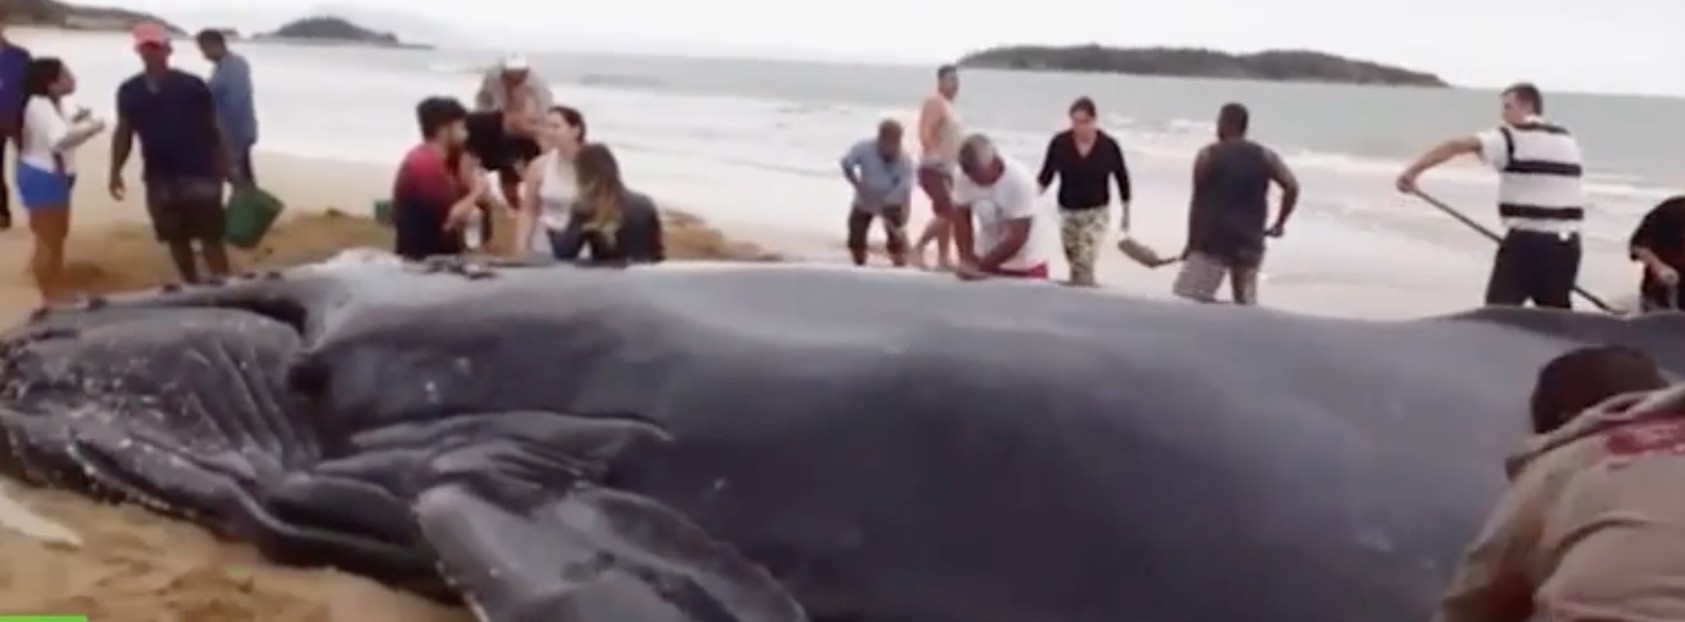 Εκατοντάδες άνθρωποι βοηθούν φάλαινα να επιστρέψει στο νερό [ΒΙΝΤΕΟ]